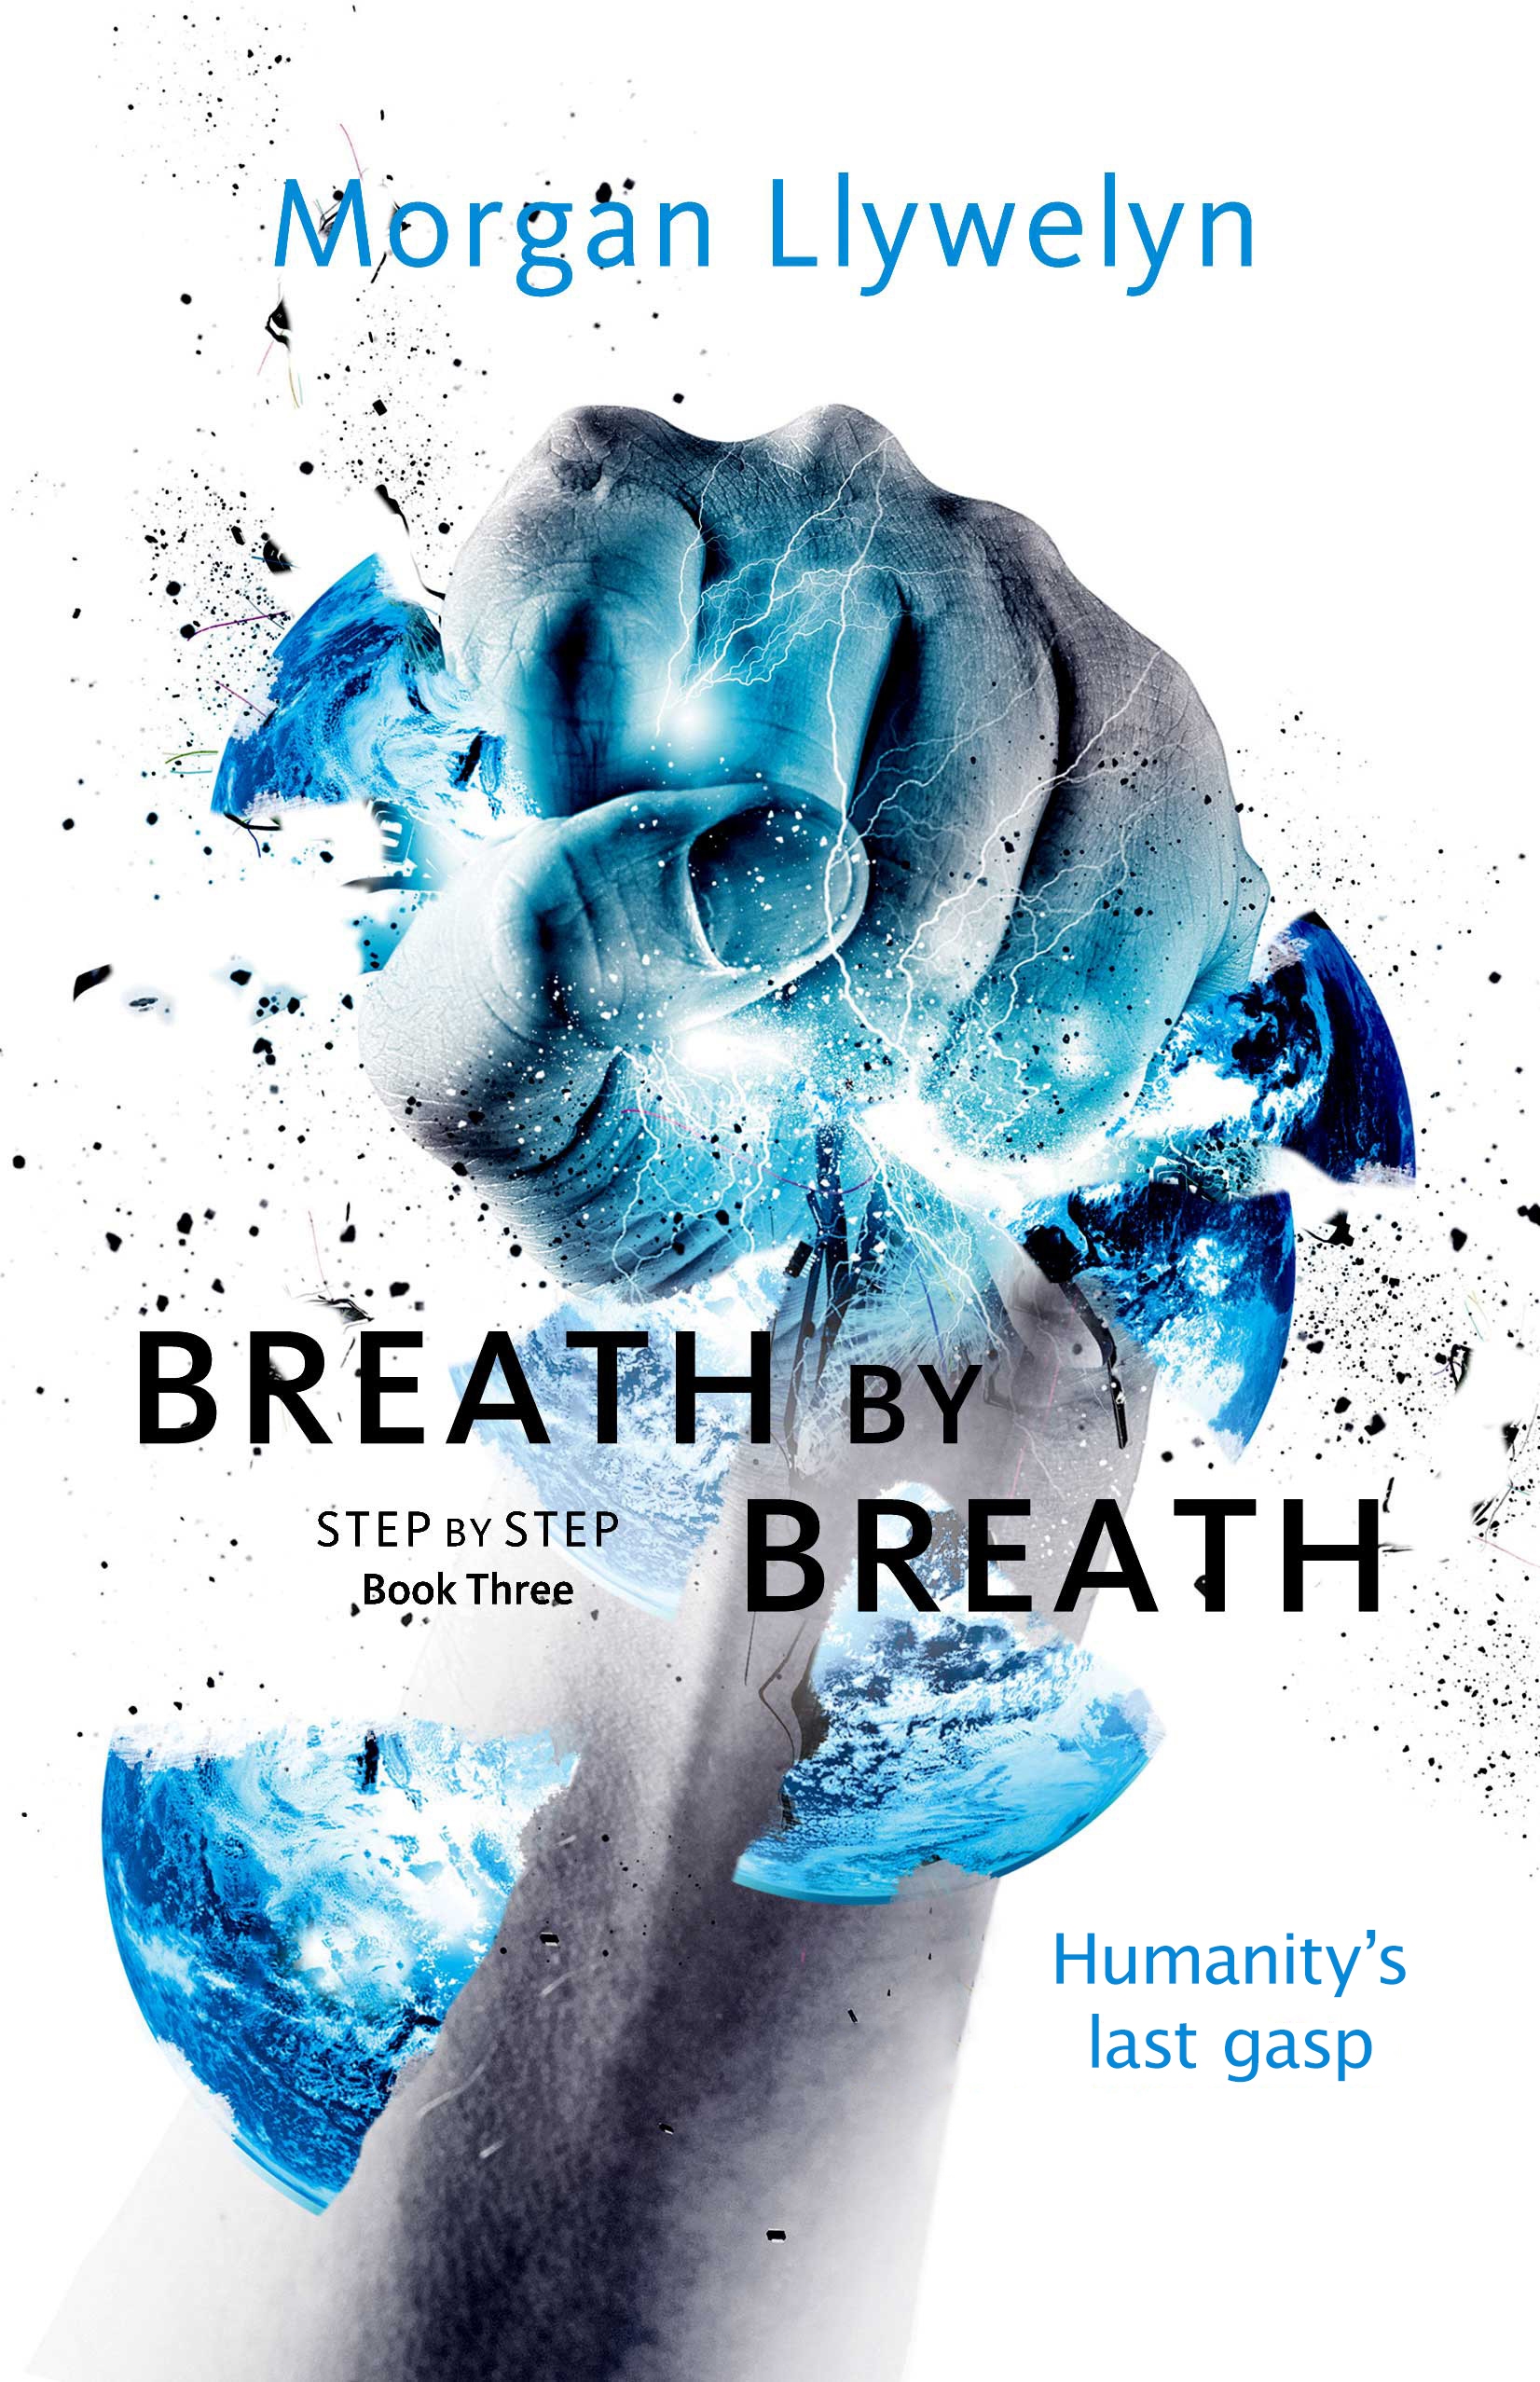 Breath by Breath : Book Three Step by Step by Morgan Llywelyn